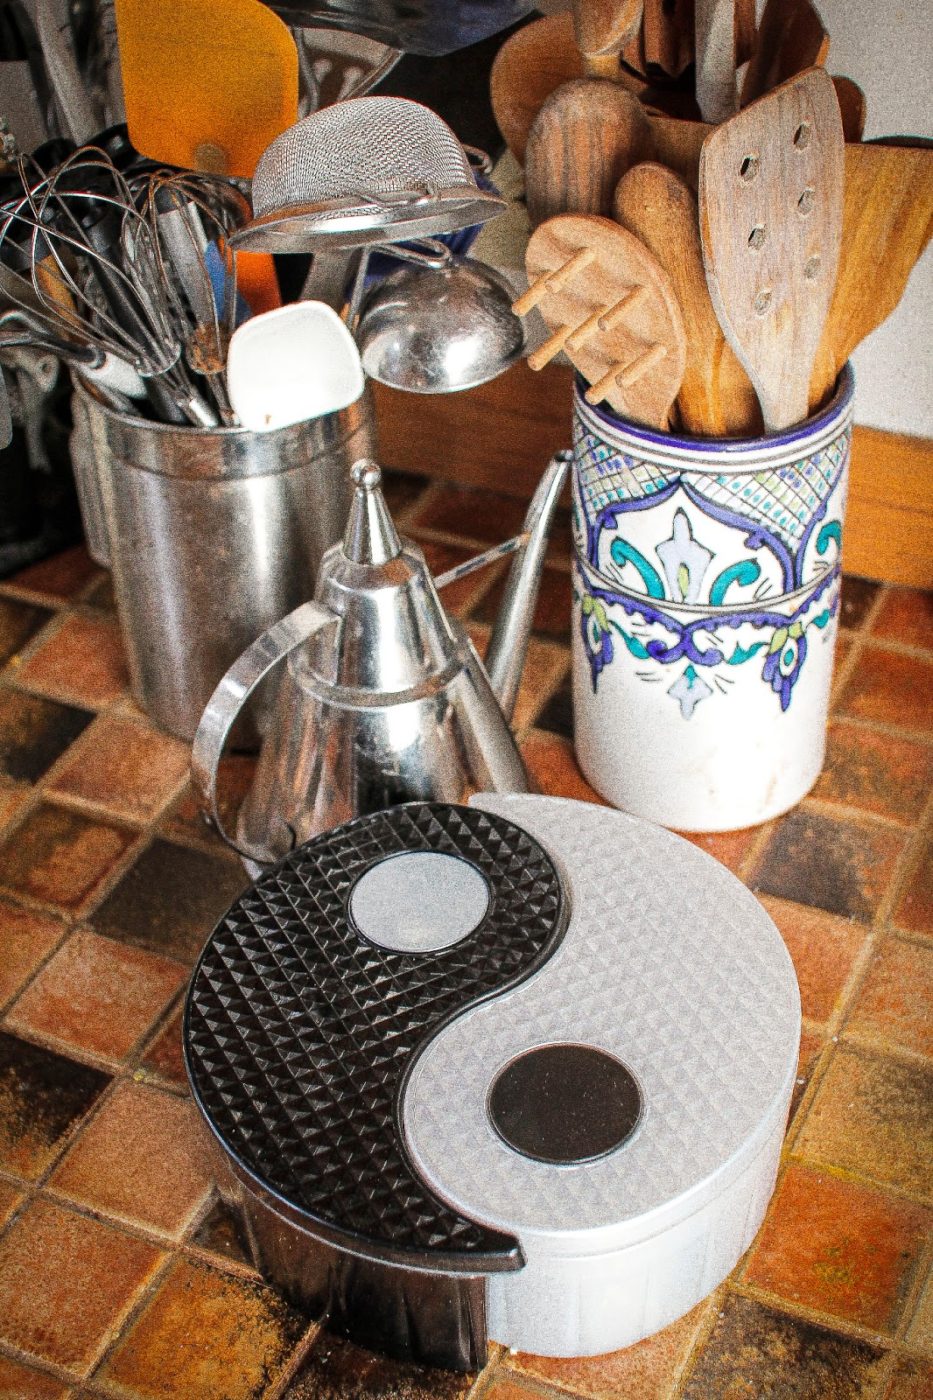 GitaDini Yin Yang Storage Bin on a kitchen counter